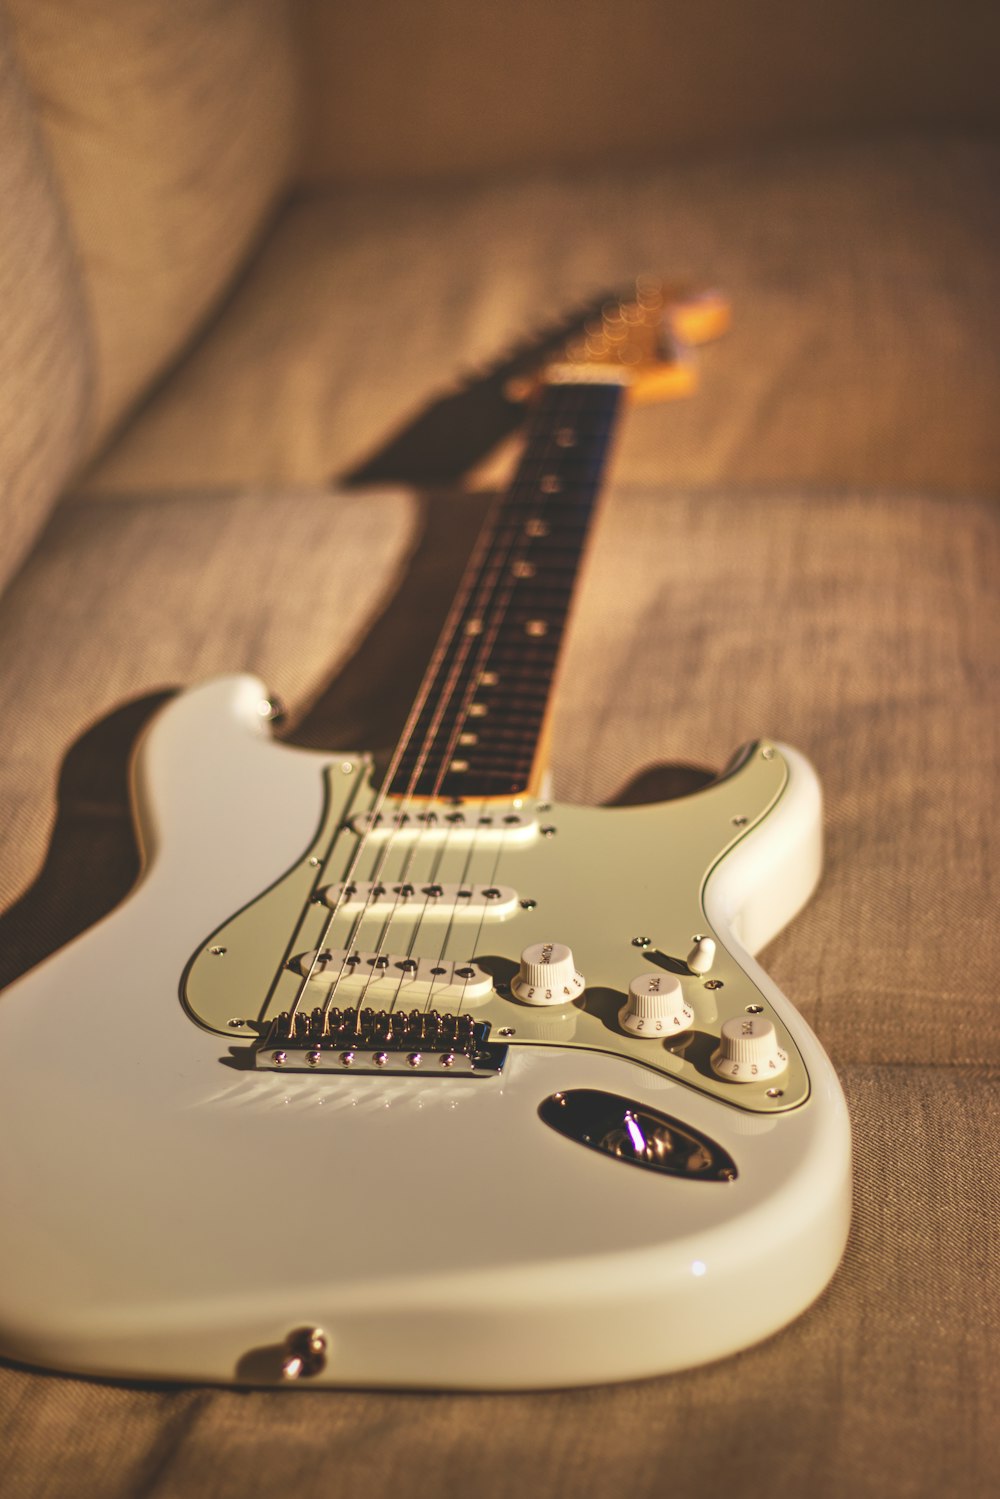 Guitarra eléctrica Stratocaster blanca y negra